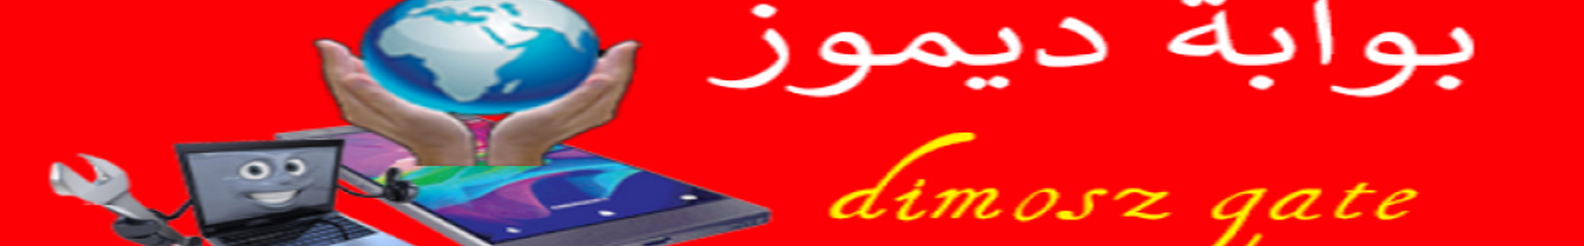 Profil-Banner von dimosz oner